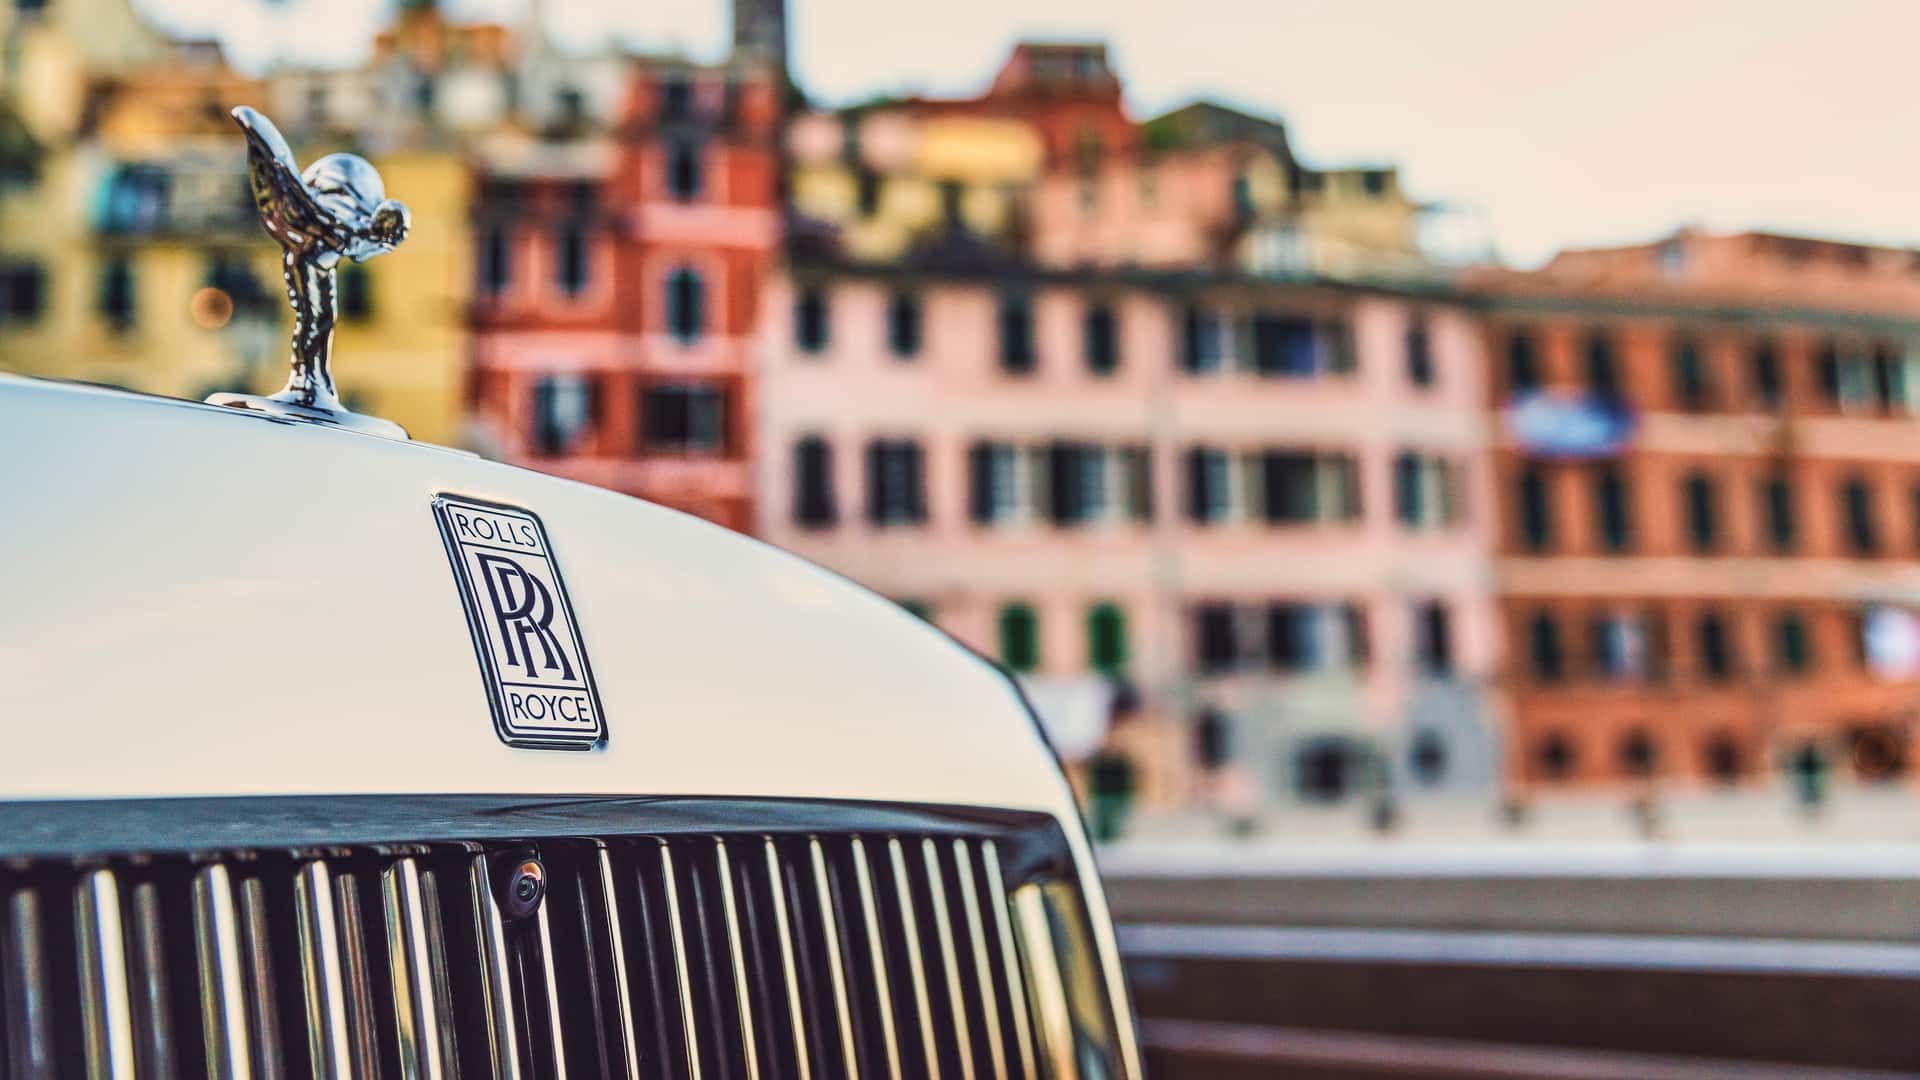 Rolls-Royce Phantom phiên bản đặc biệt Cinque Terre lấy cảm hứng từ 5 ngôi làng ven biển nước Ý